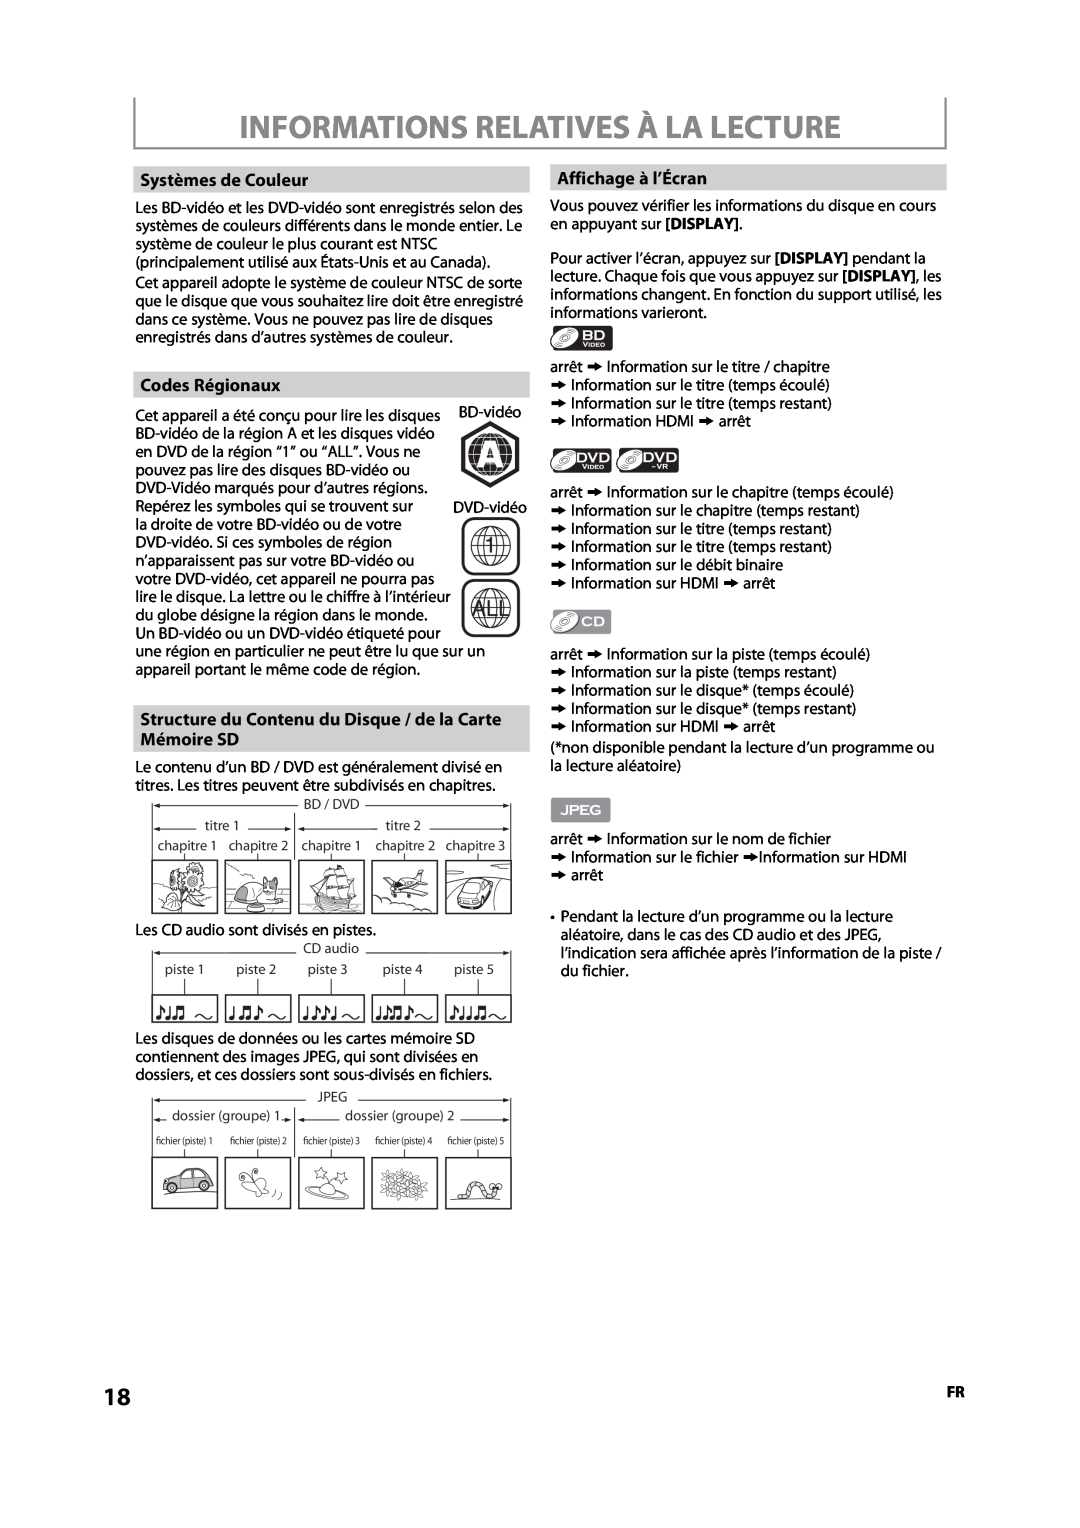 Sylvania NB500SL9 Informations Relatives À La Lecture, Systèmes de Couleur, Codes Régionaux, Affichage à l’Écran 